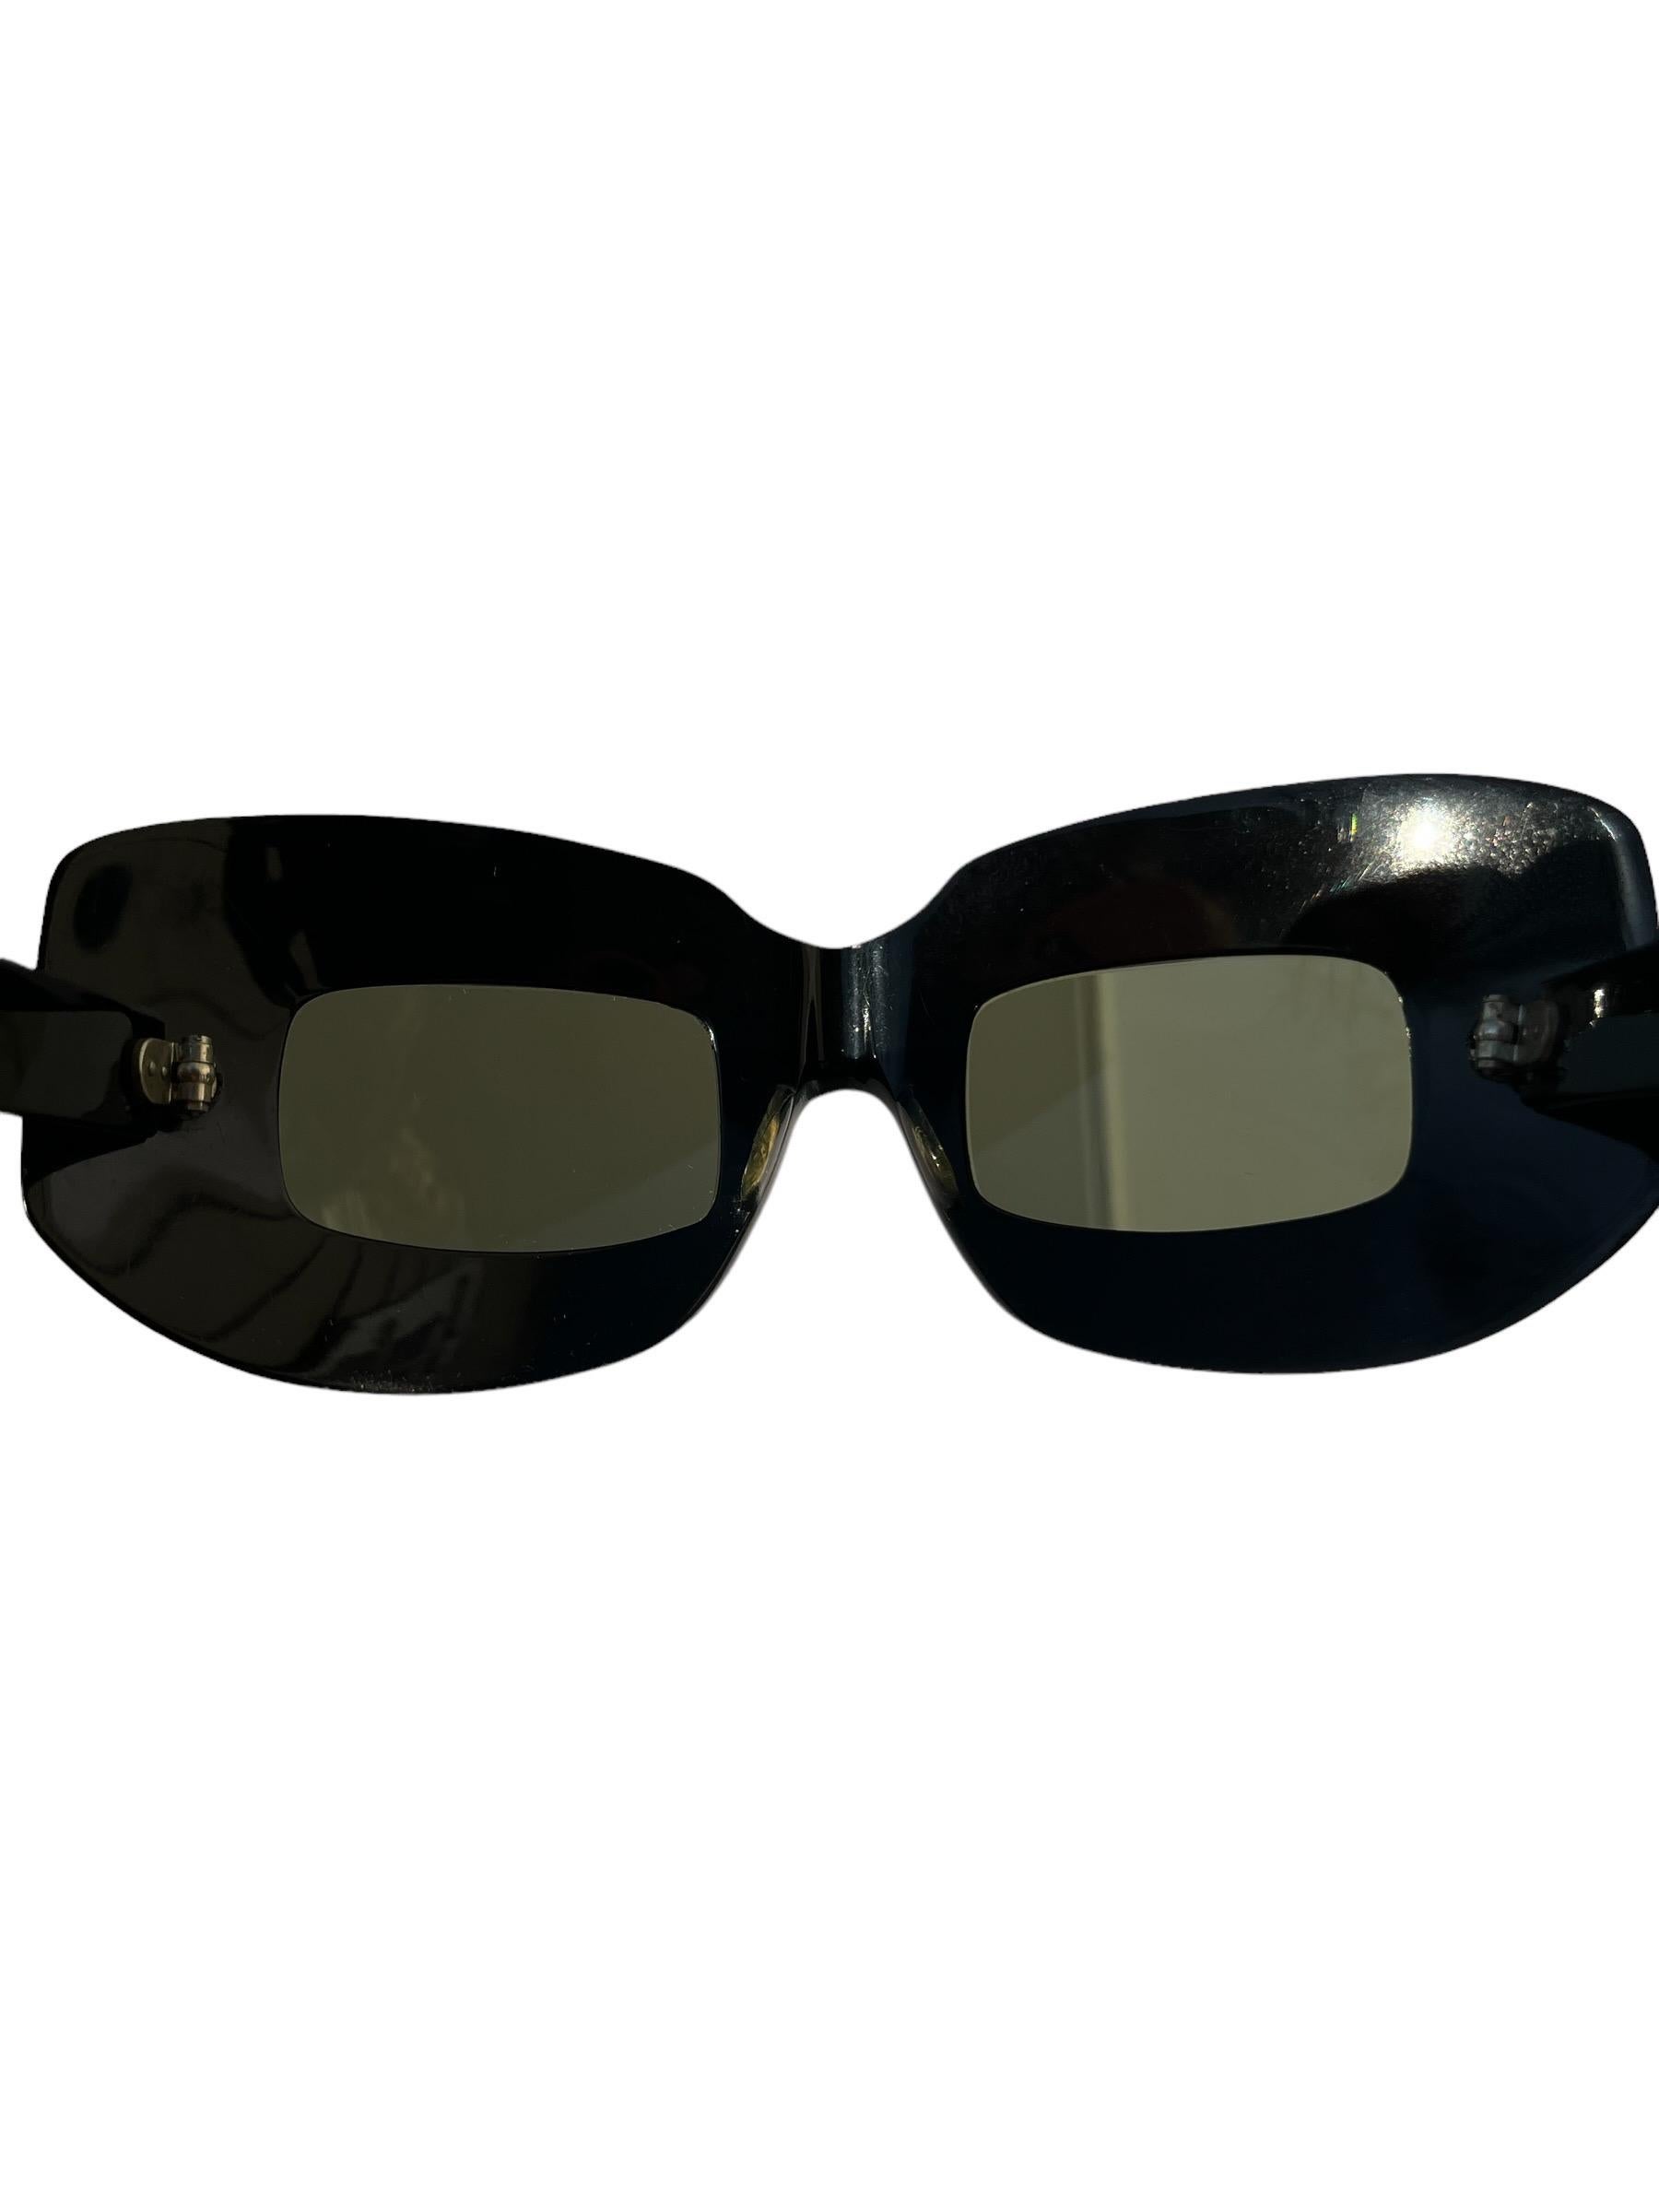 Vintage 1960s Oliver Goldsmith Mod Black Sunglasses  For Sale 4